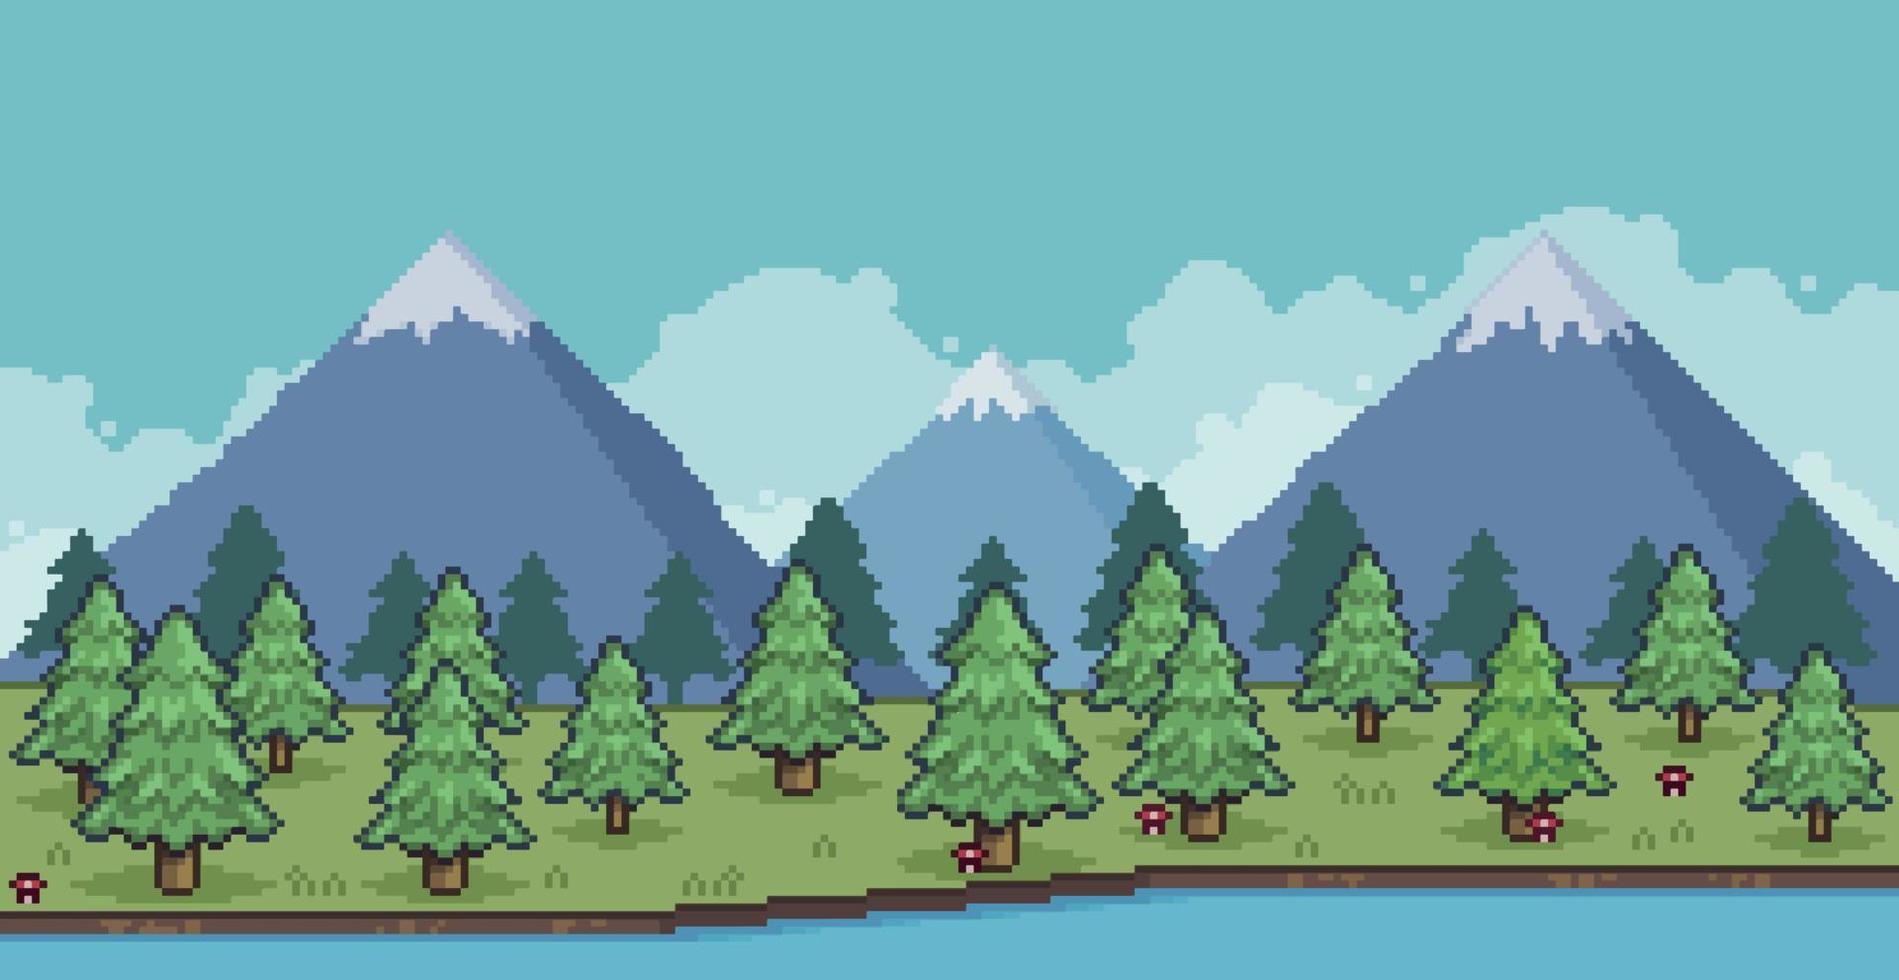 pixel konst landskap av tallskog i bergen med sjö och moln 8 bitars spel bakgrund vektor